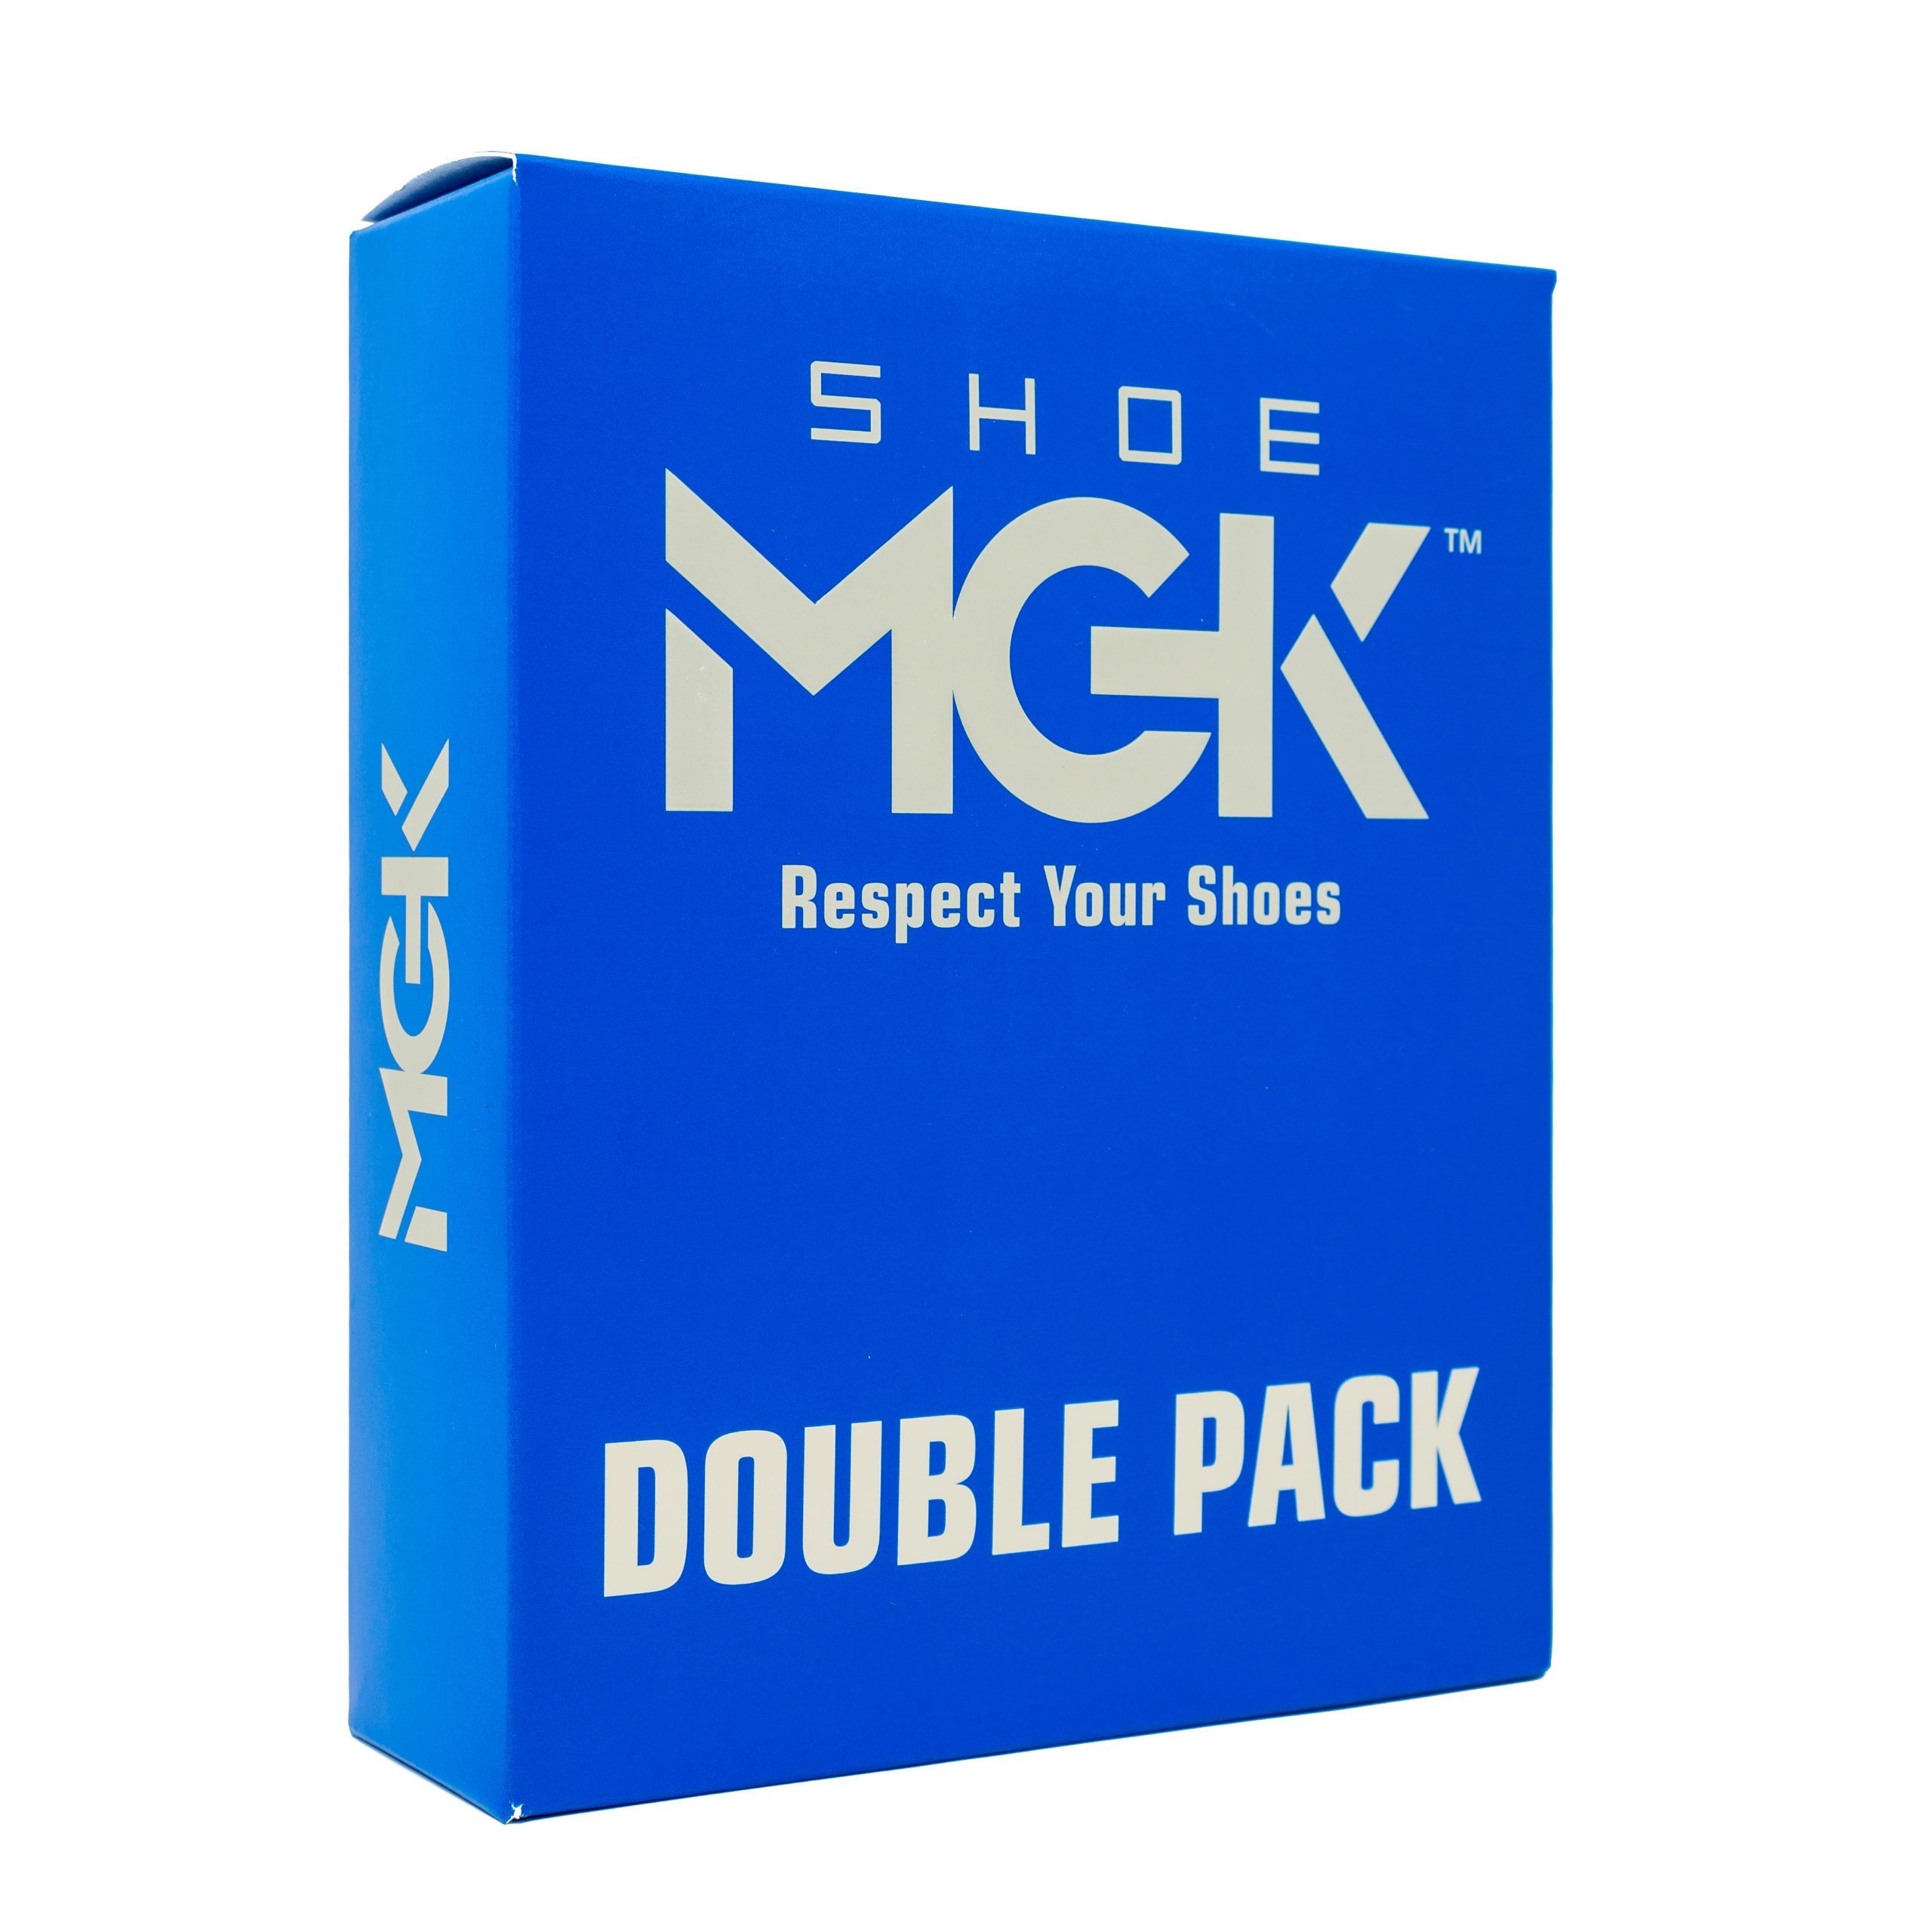 SHOE MGK Double Pack Kit - Shoe MGK